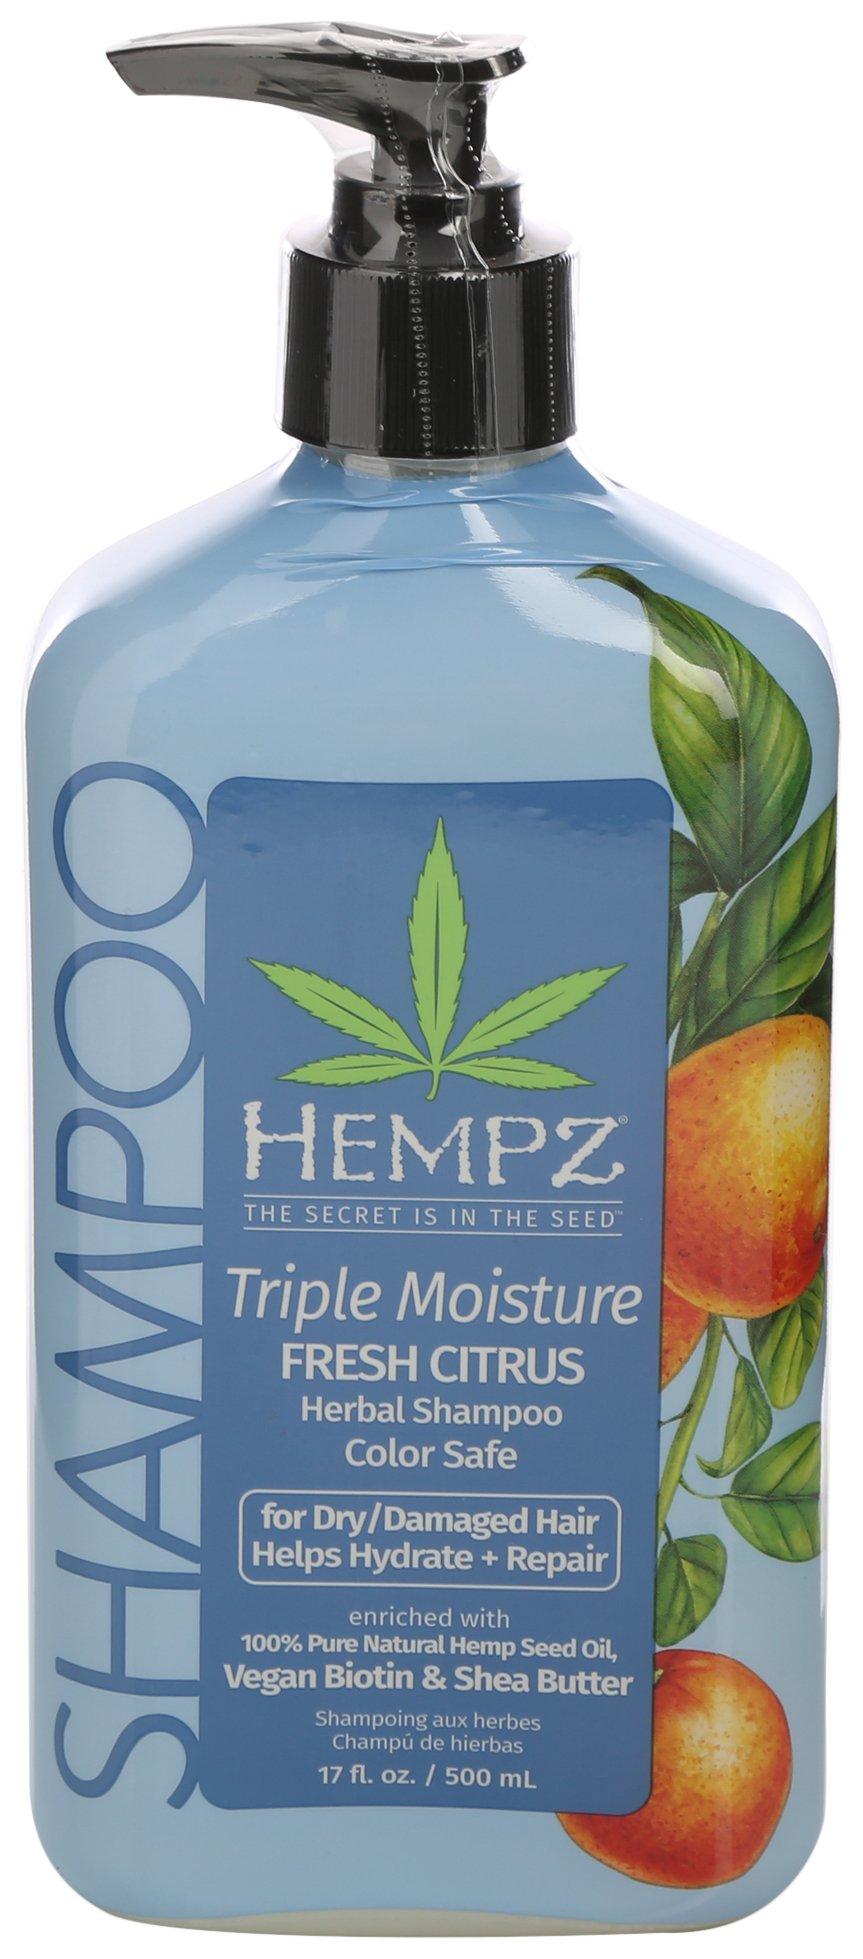 Triple Moisture 17 Fl.Oz. Fresh Citrus Shampoo